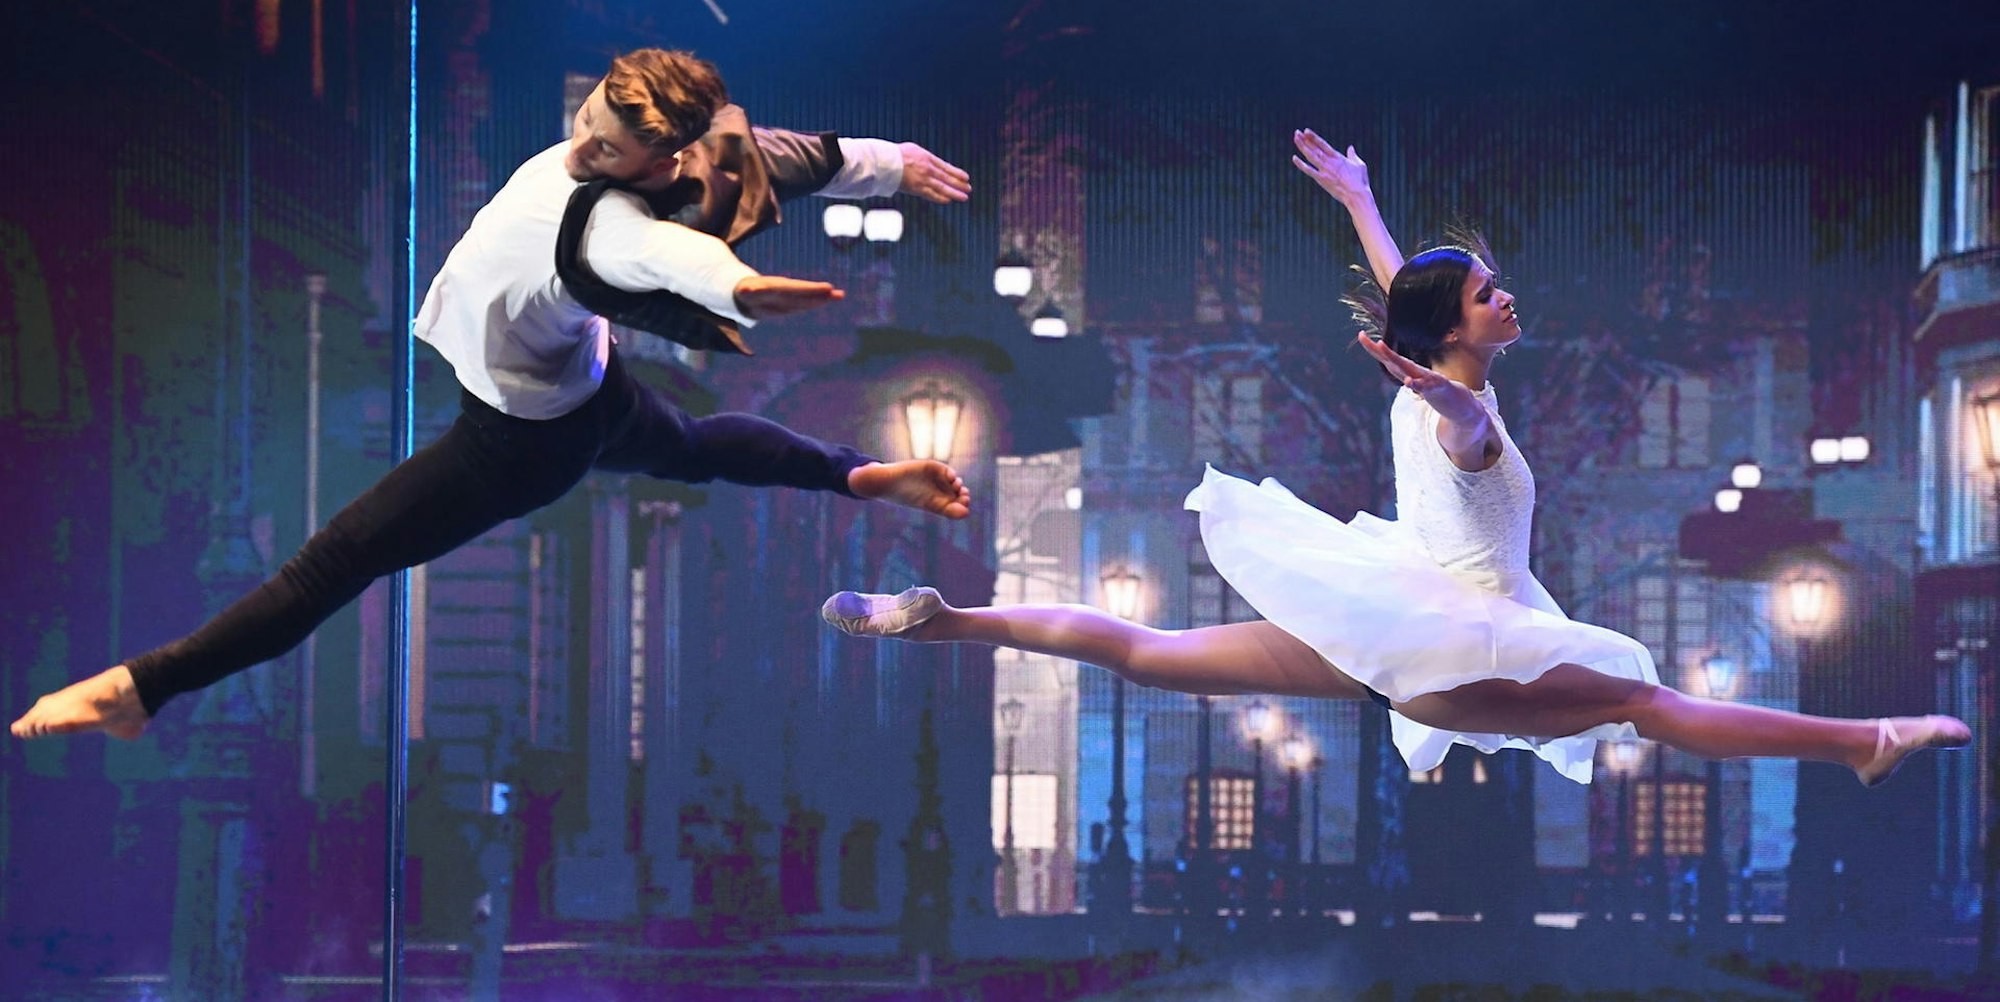 Mit spektakulären Figuren widersetzen sich Sergey Mishchurenko und Maria Tolika in der Tanz-Show „Masters of Dance“ der Schwerkraft.